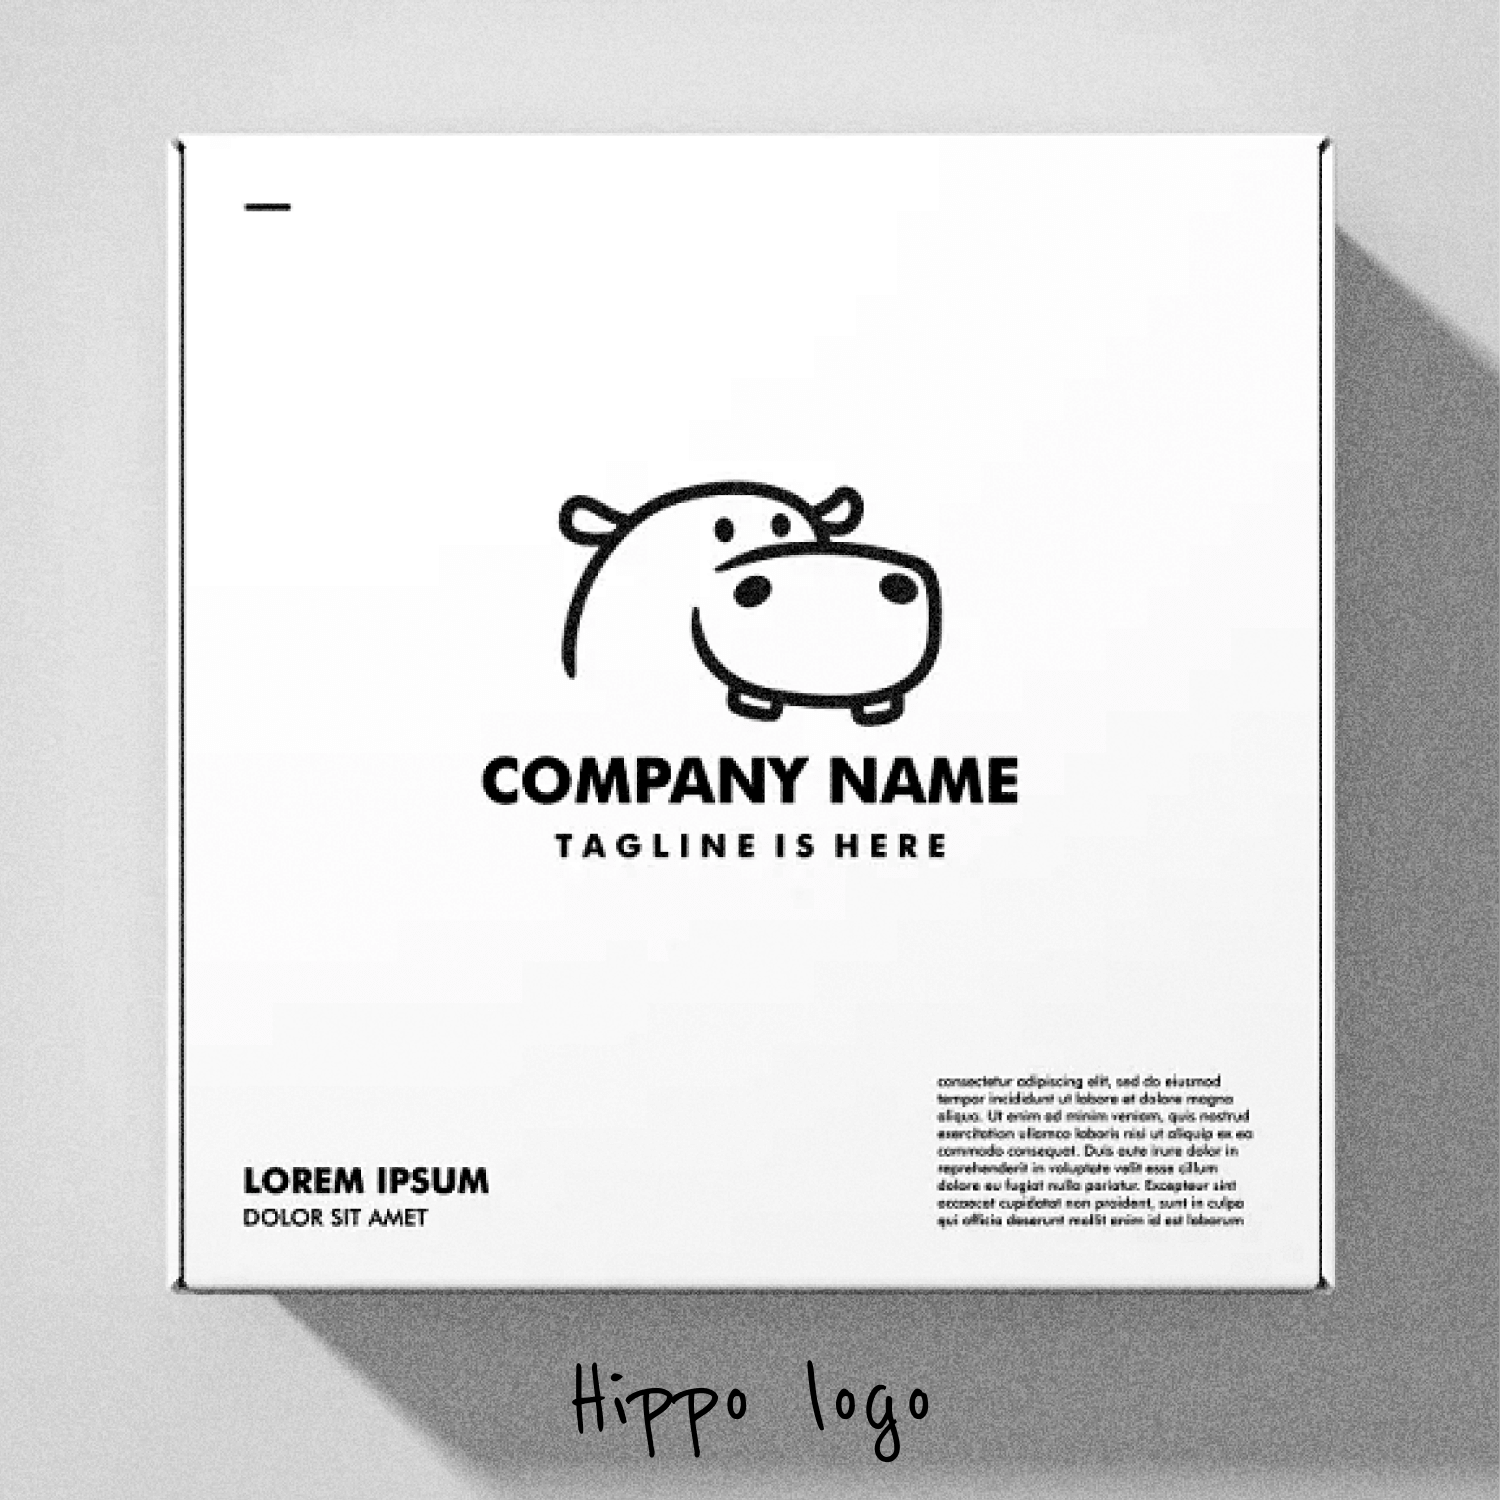 Hippo logo company name.